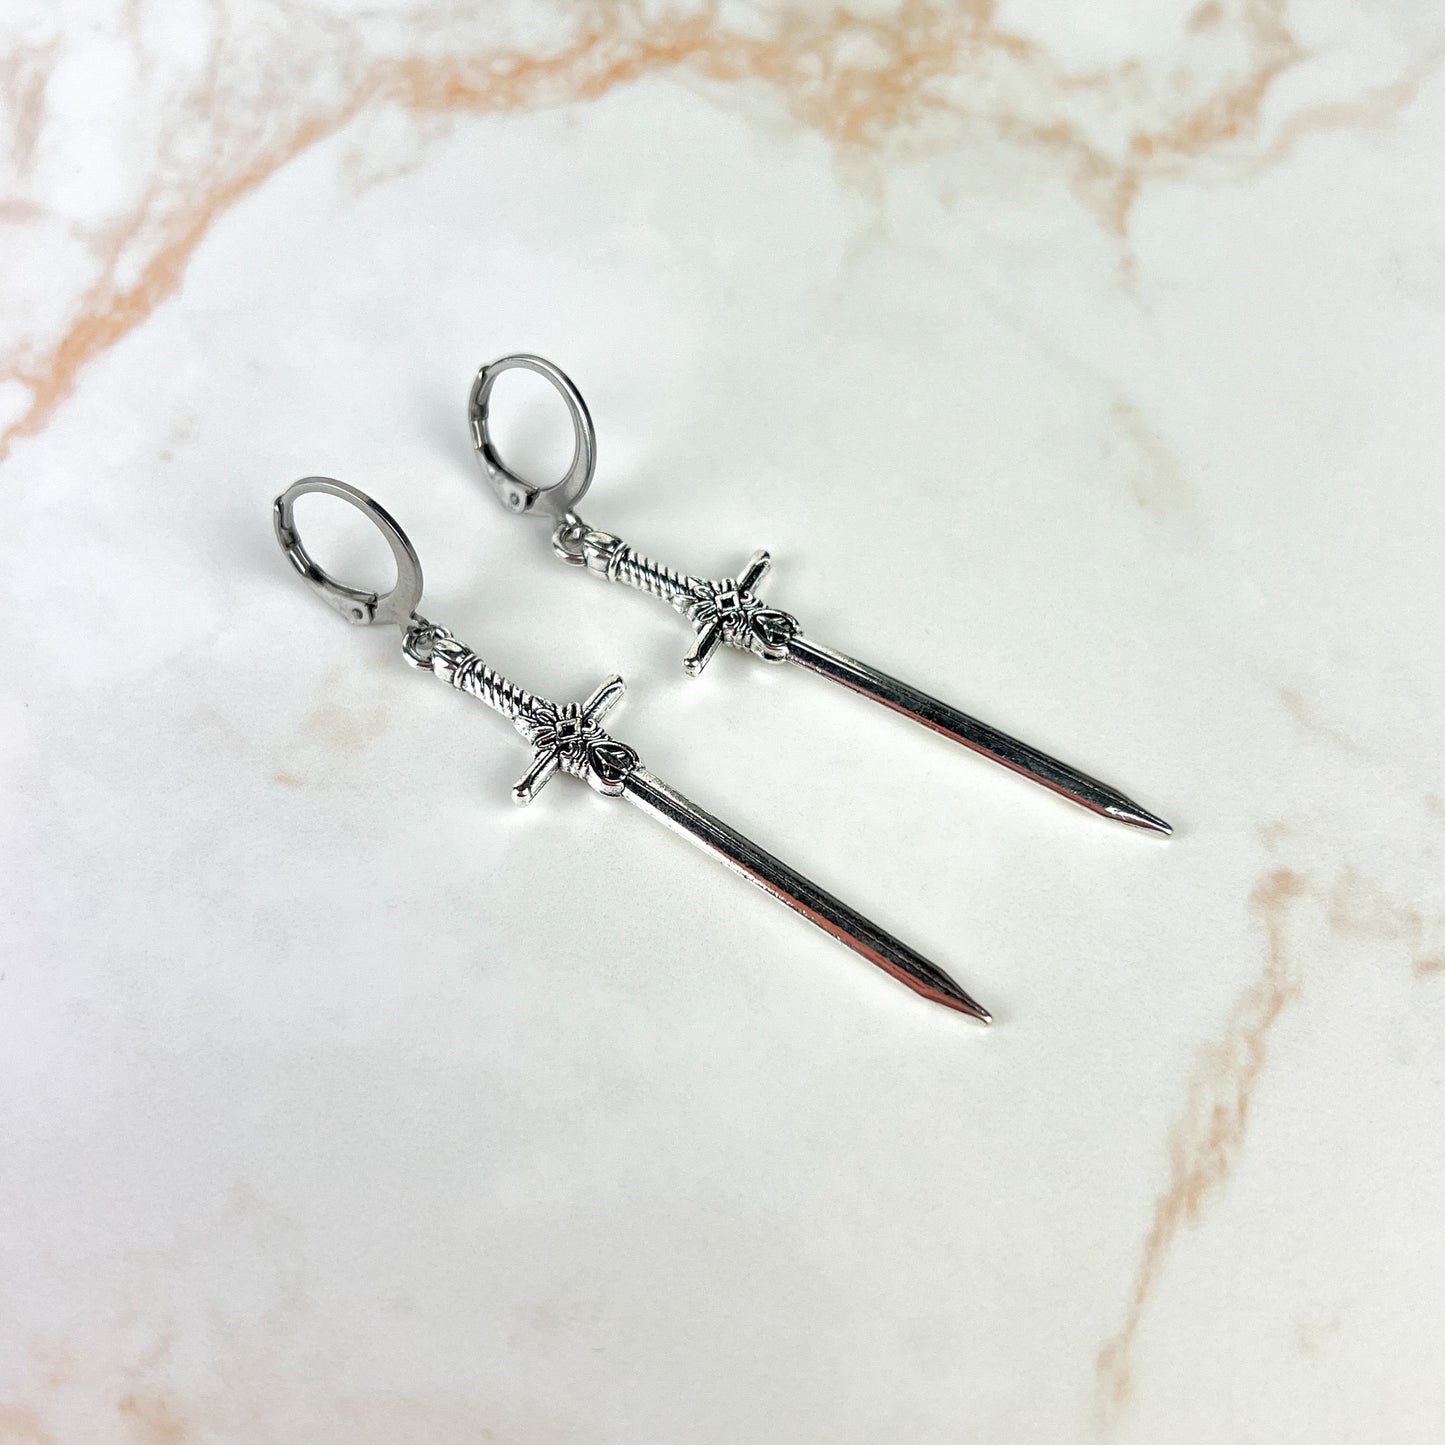 Medieval fantasy sword earrings